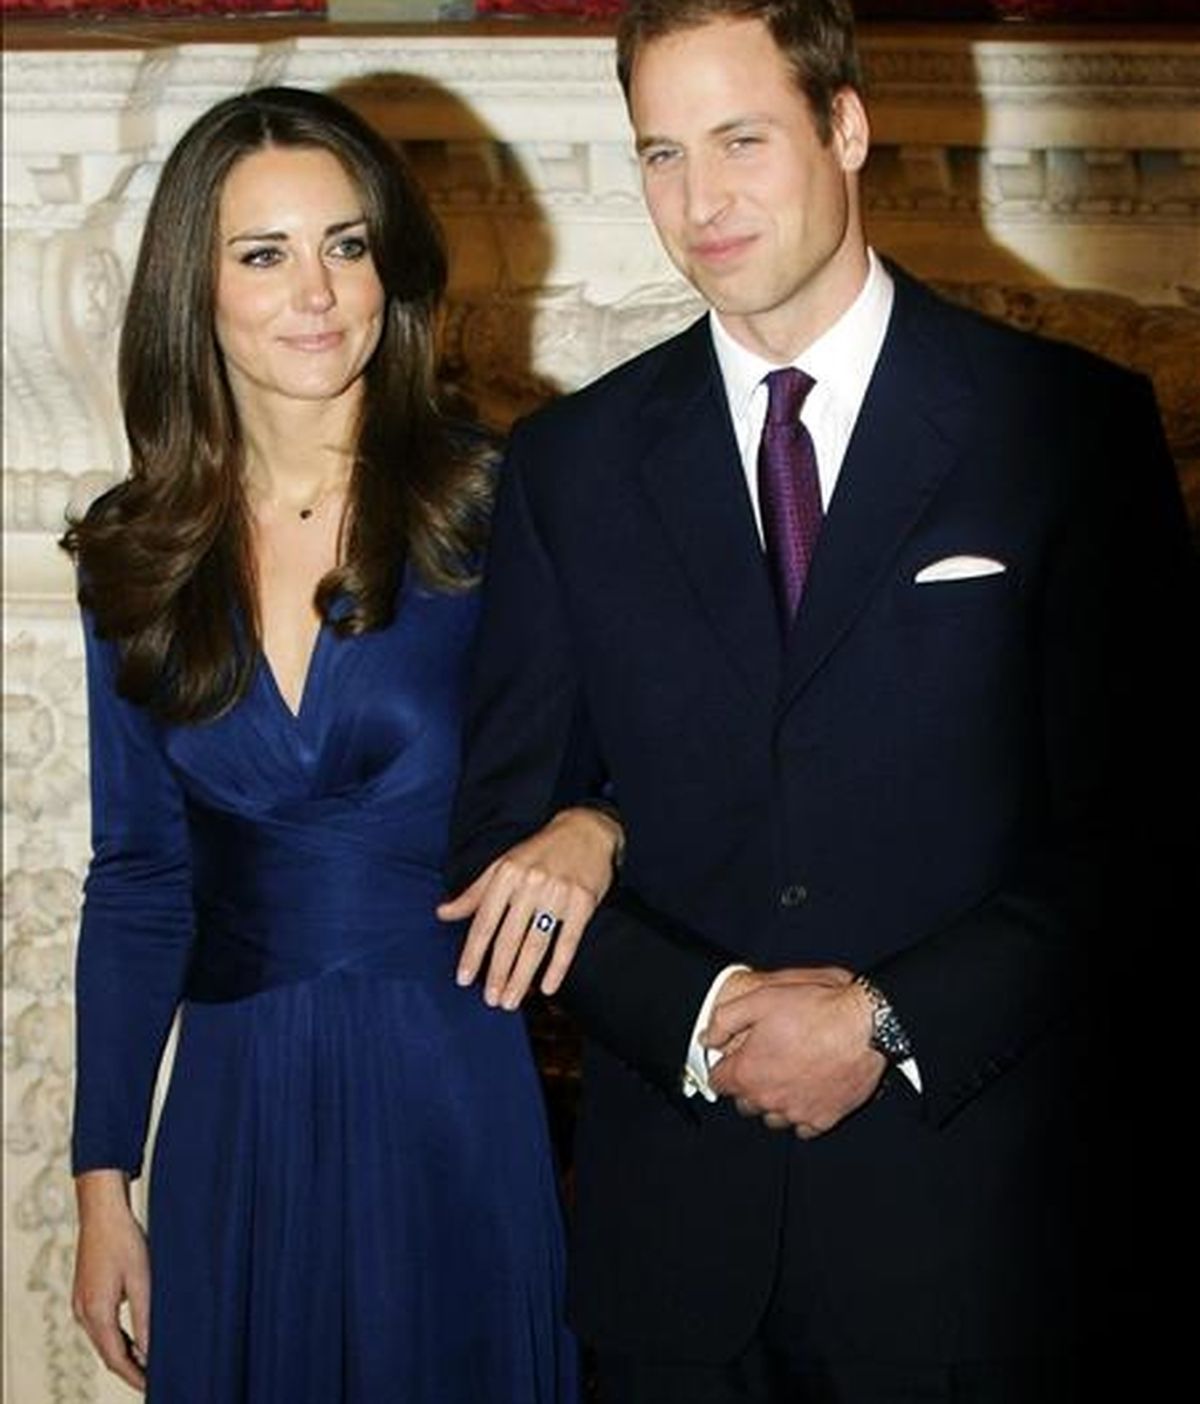 El príncipe Guillermo (d), segundo en la línea de sucesión al trono británico, y su prometida Kate Middleton (i) posan para los fotógrafos el martes 16 de noviembre de 2010, en el Palacio de San James en Londres (Reino Unido), después de anunciar su compromiso. EFE/Archivo